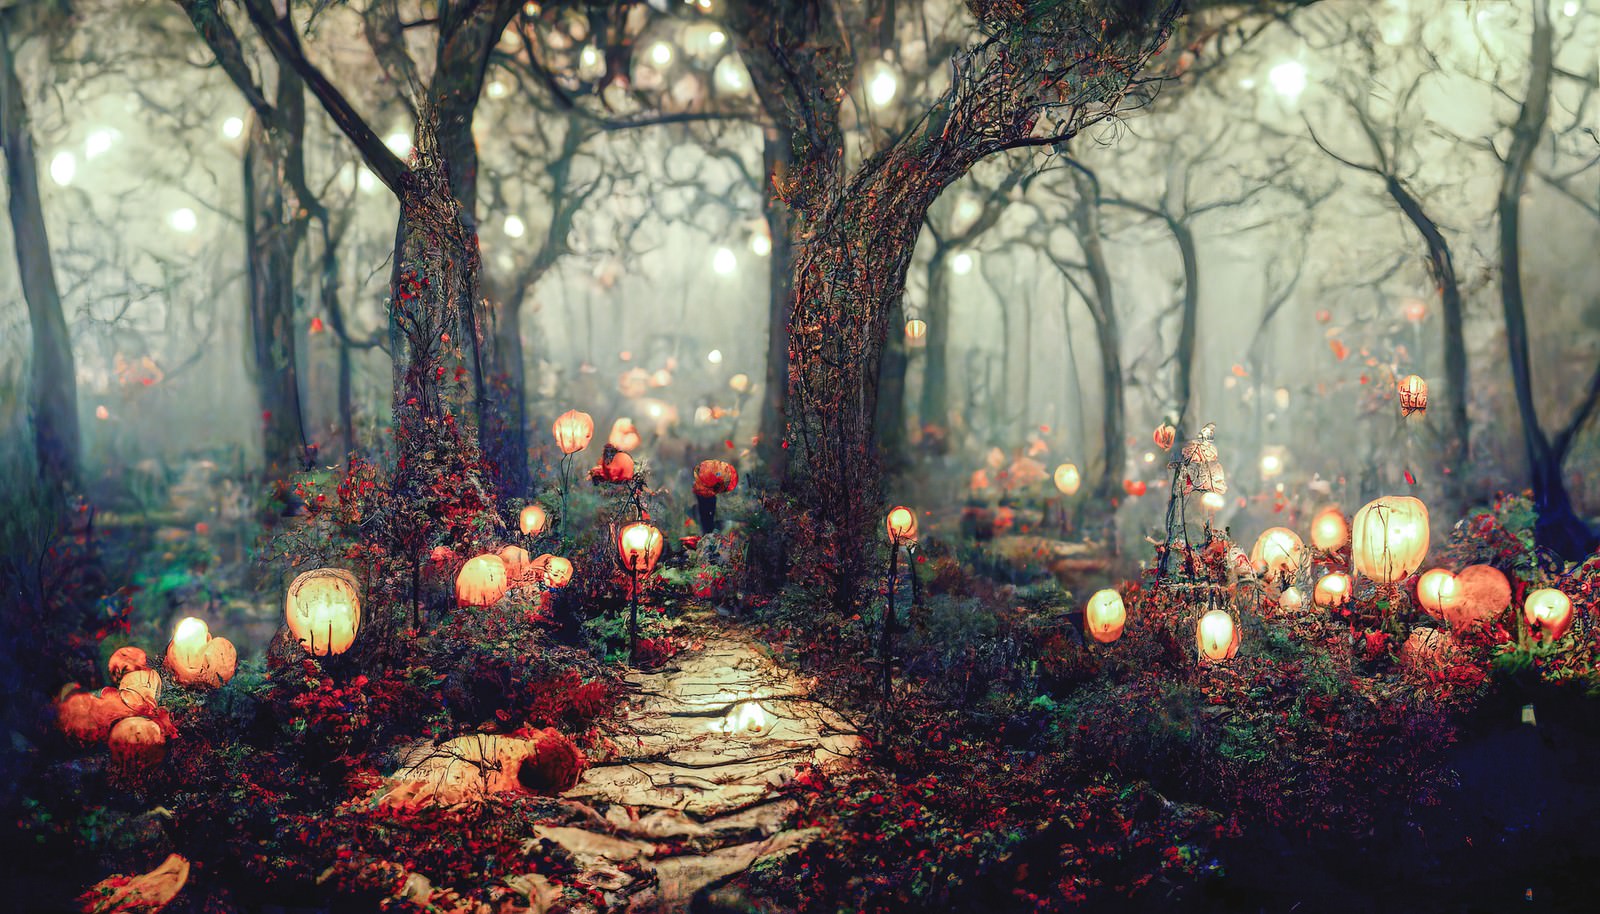 「幻想的なハロウィンの森 | フリー素材のぱくたそ」の写真